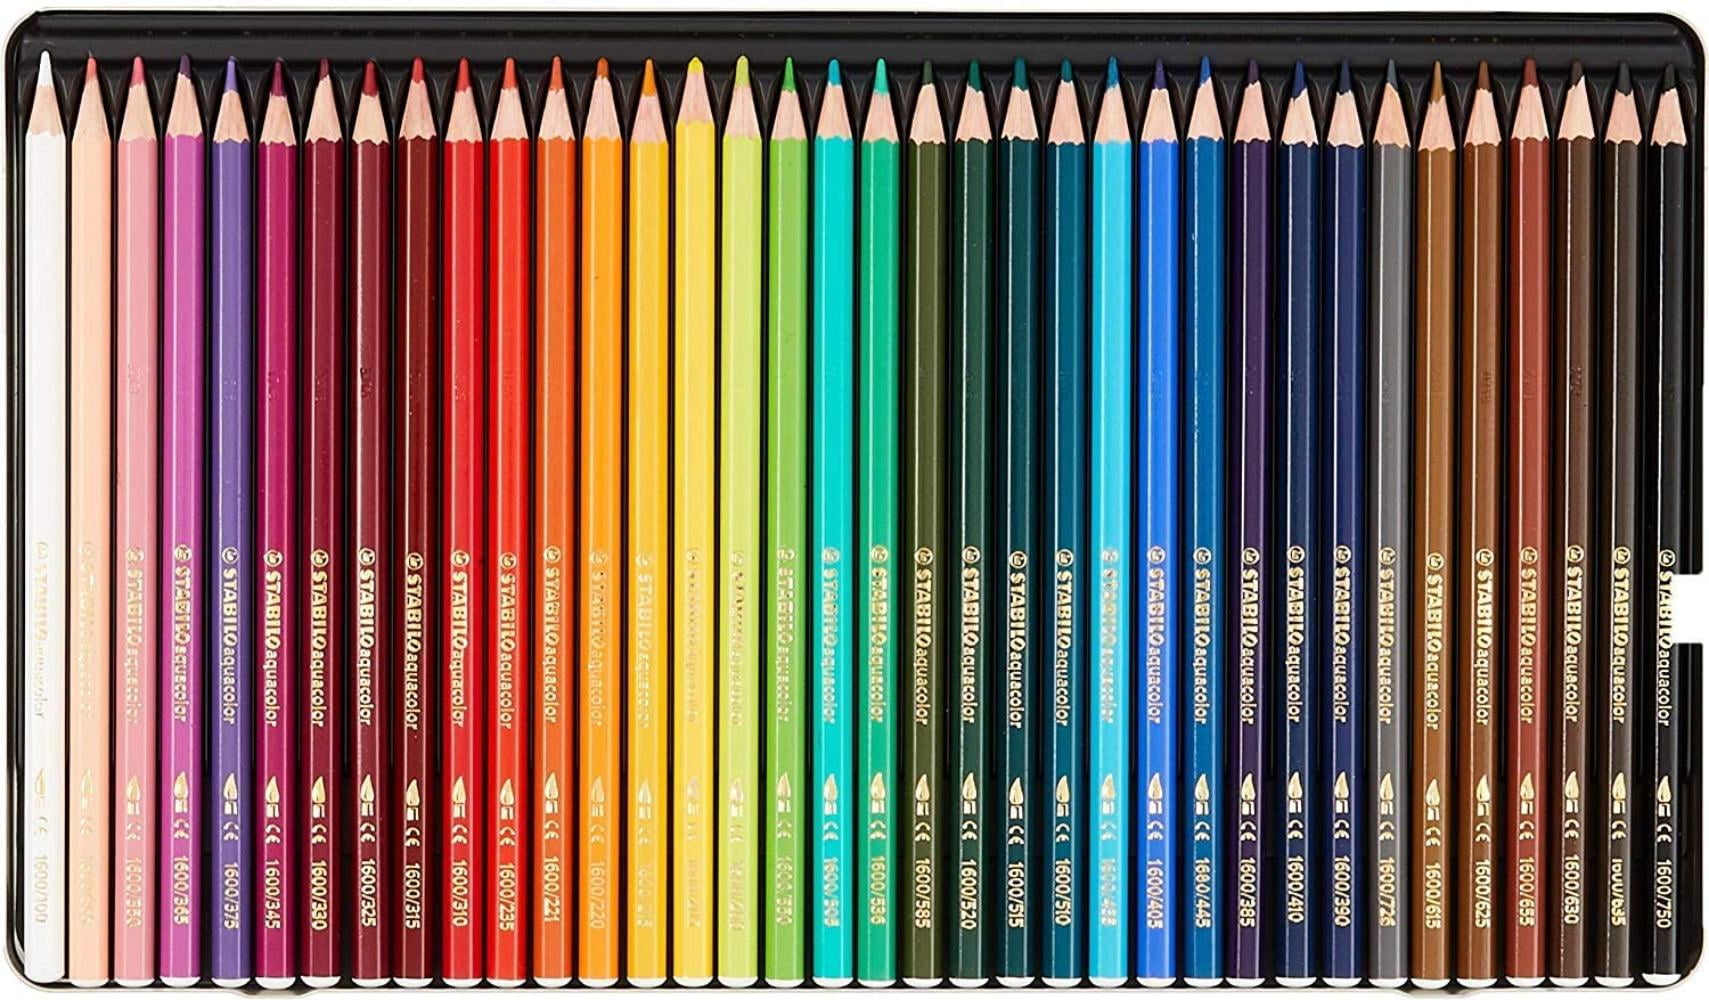 STABILO AQUACOLOR 36 Colori Watercolor Pencils with case metal 1636-5 